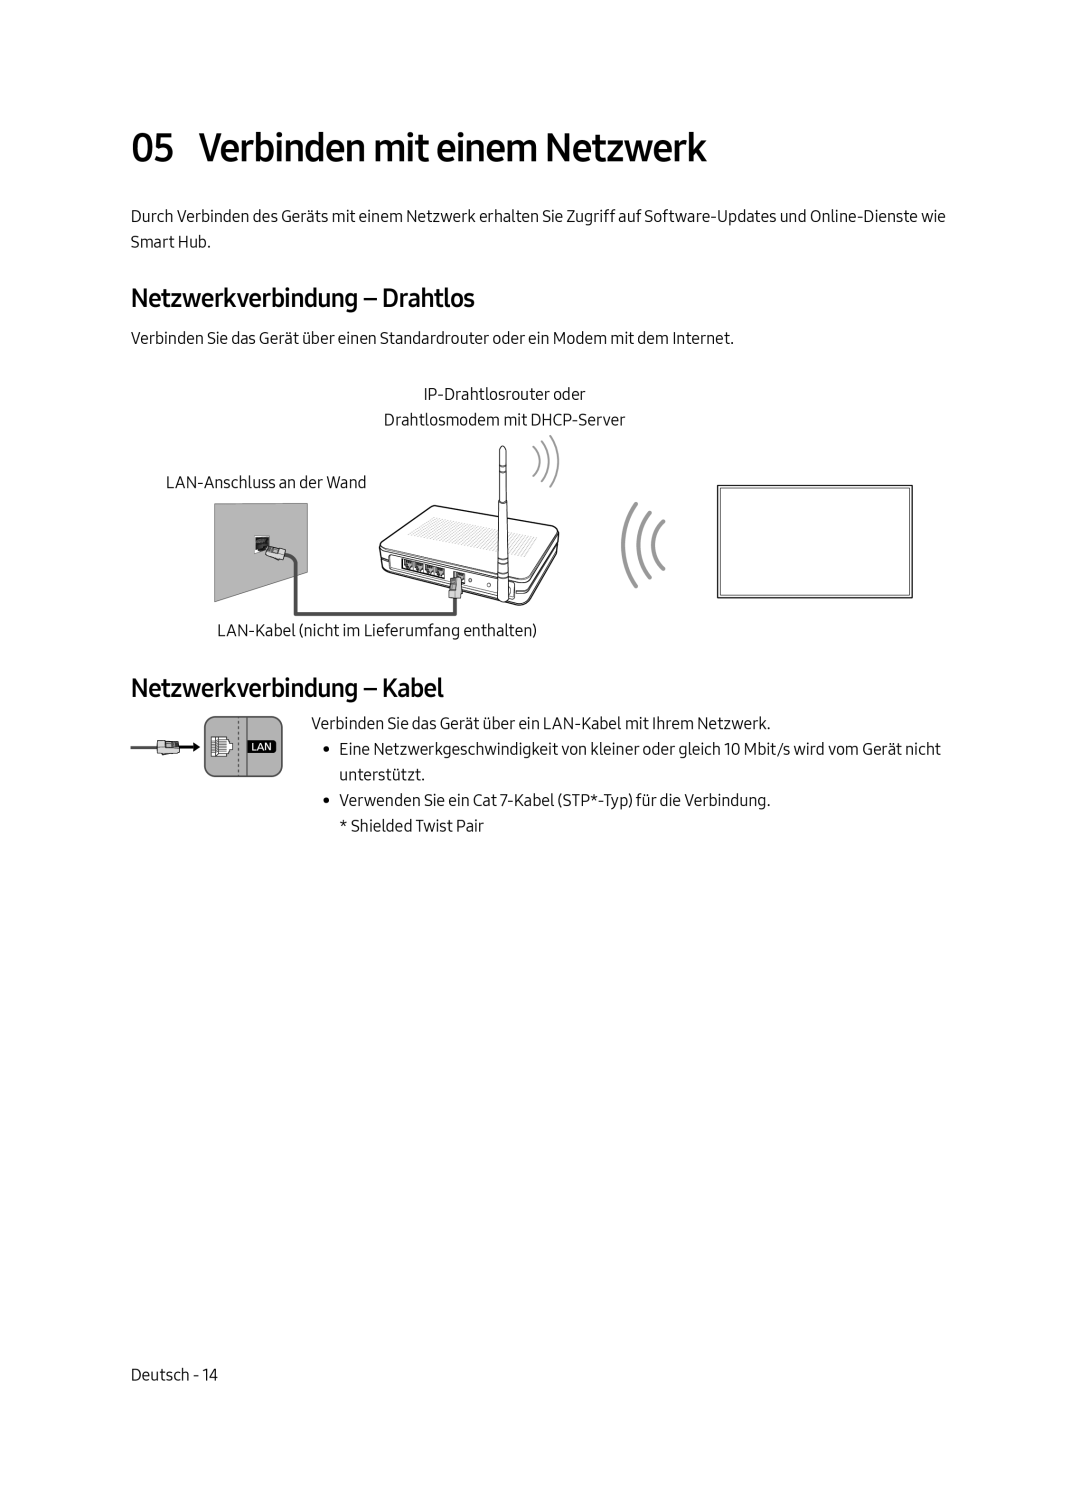 Samsung UE49MU6470UXXU manual Verbinden mit einem Netzwerk, Netzwerkverbindung - Drahtlos, Netzwerkverbindung - Kabel 